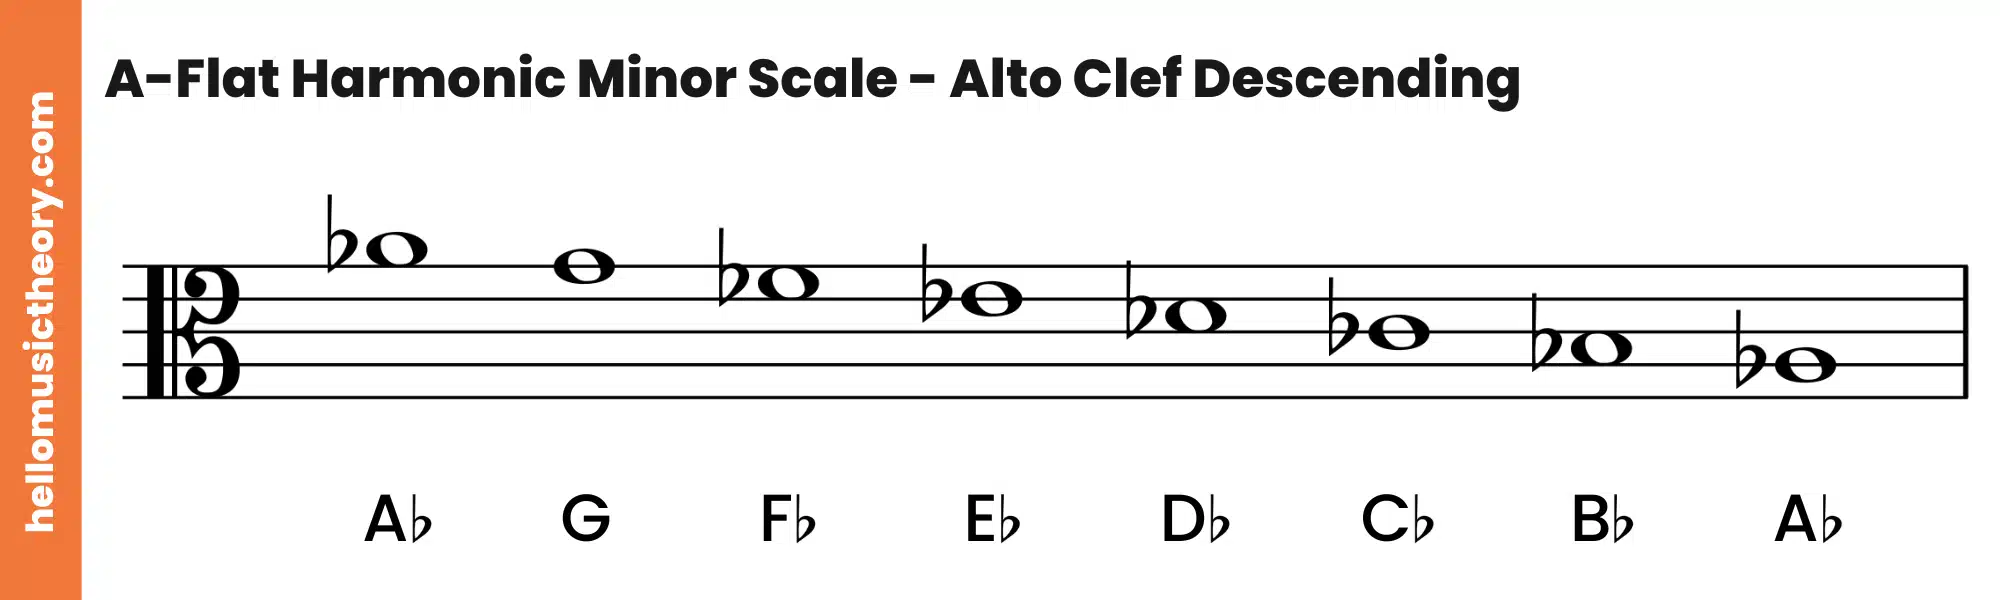 A-Flat Harmonic Minor Scale Alto Clef Descending